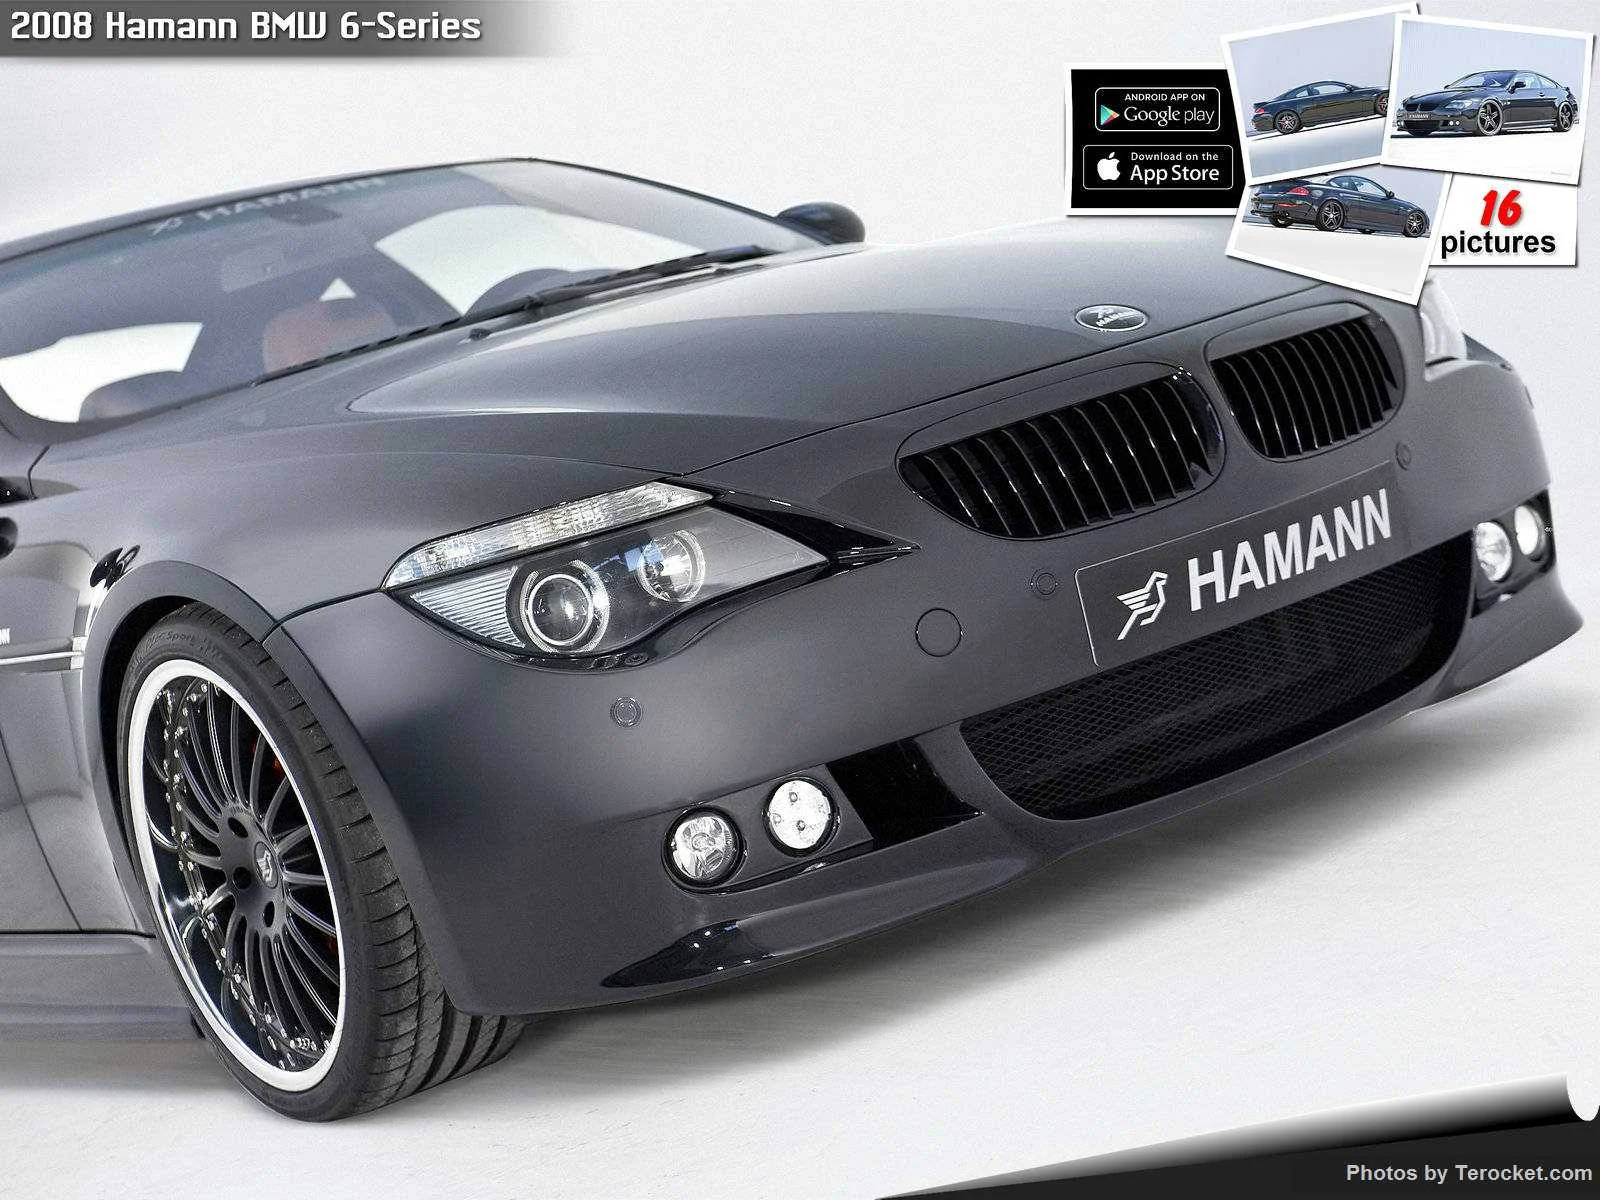 Hình ảnh xe ô tô Hamann BMW 6-Series 2008 & nội ngoại thất